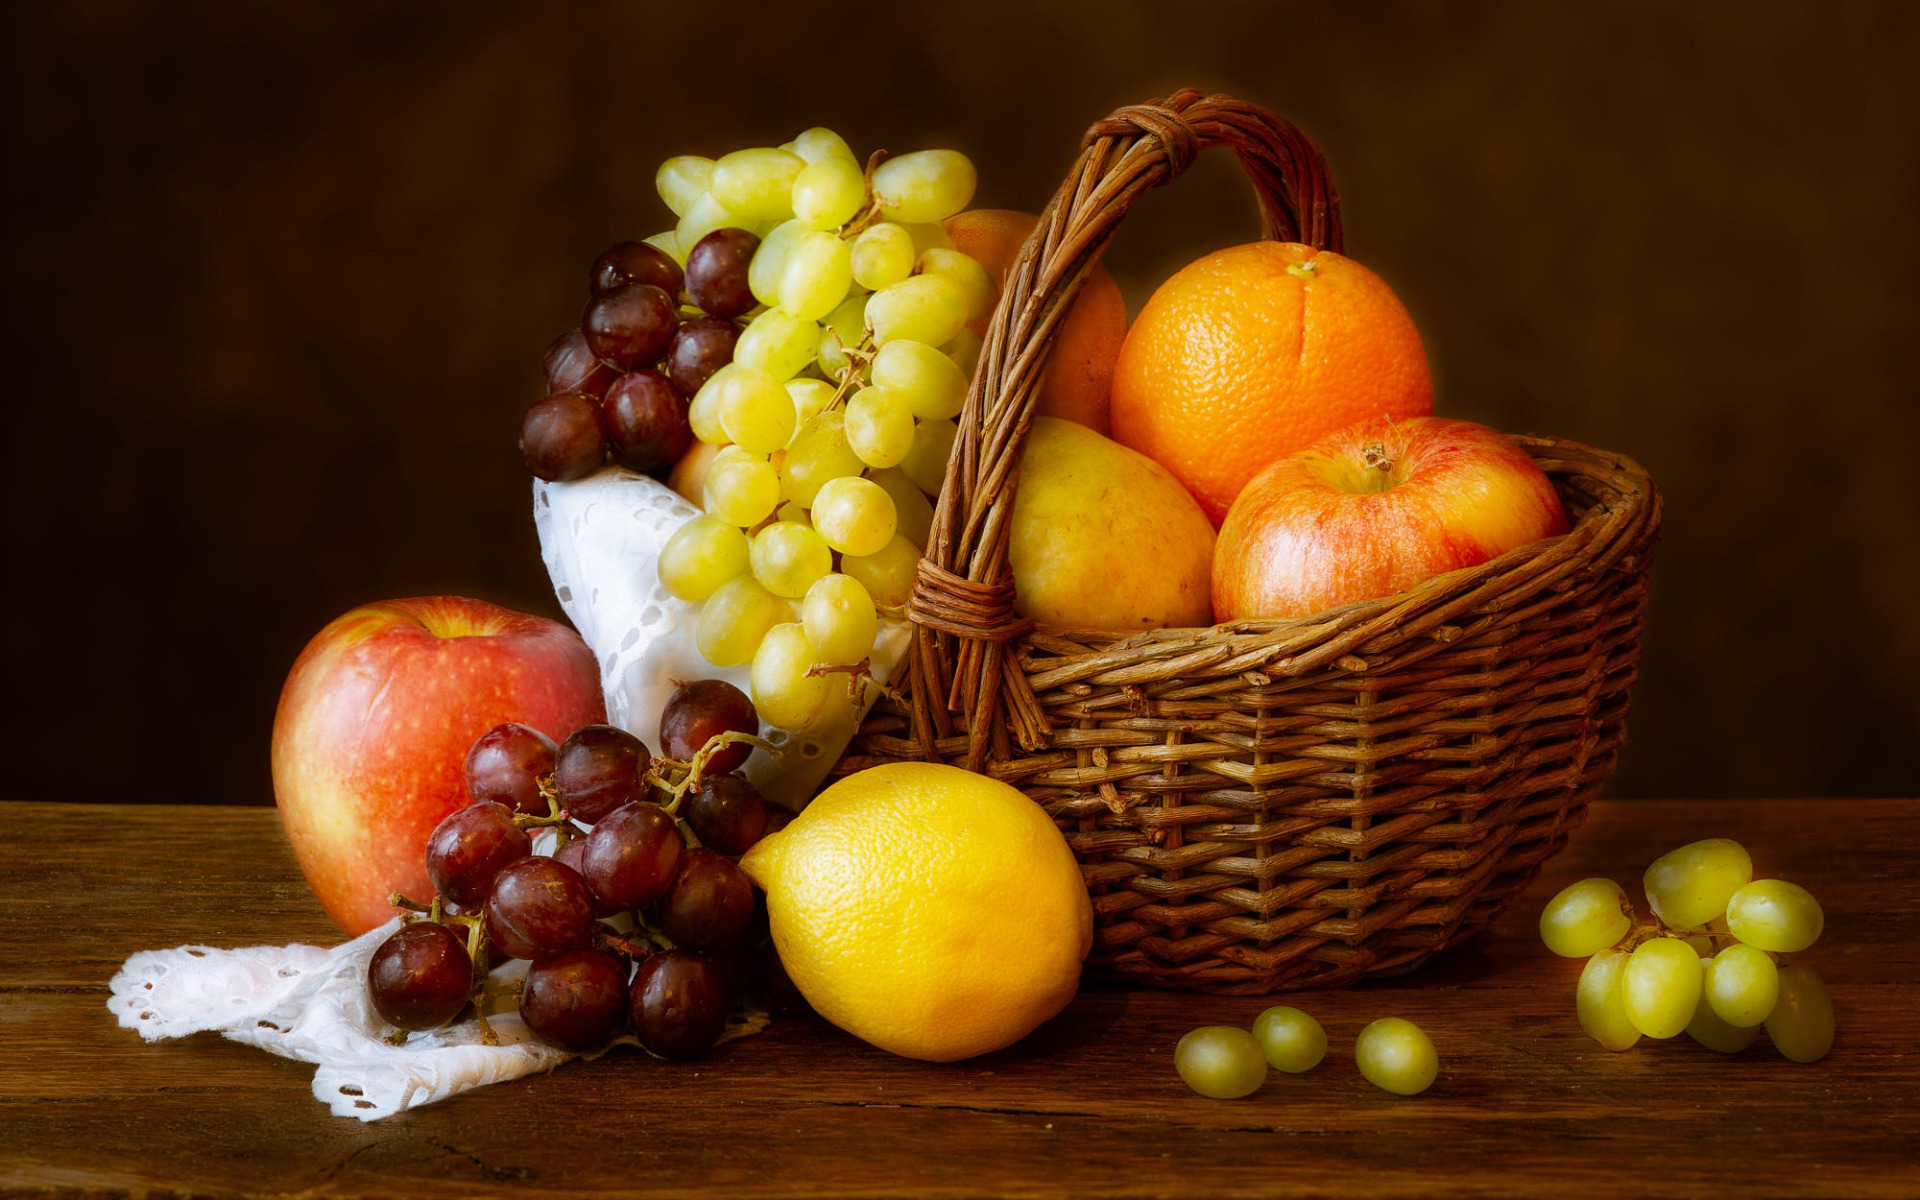 В вазе лежат 4 разных фрукта. Натюрморт с корзиной. Натюрморт с фруктами виноград апельсины. Натюрморт яблоки на столе. Апельсин и виноград.